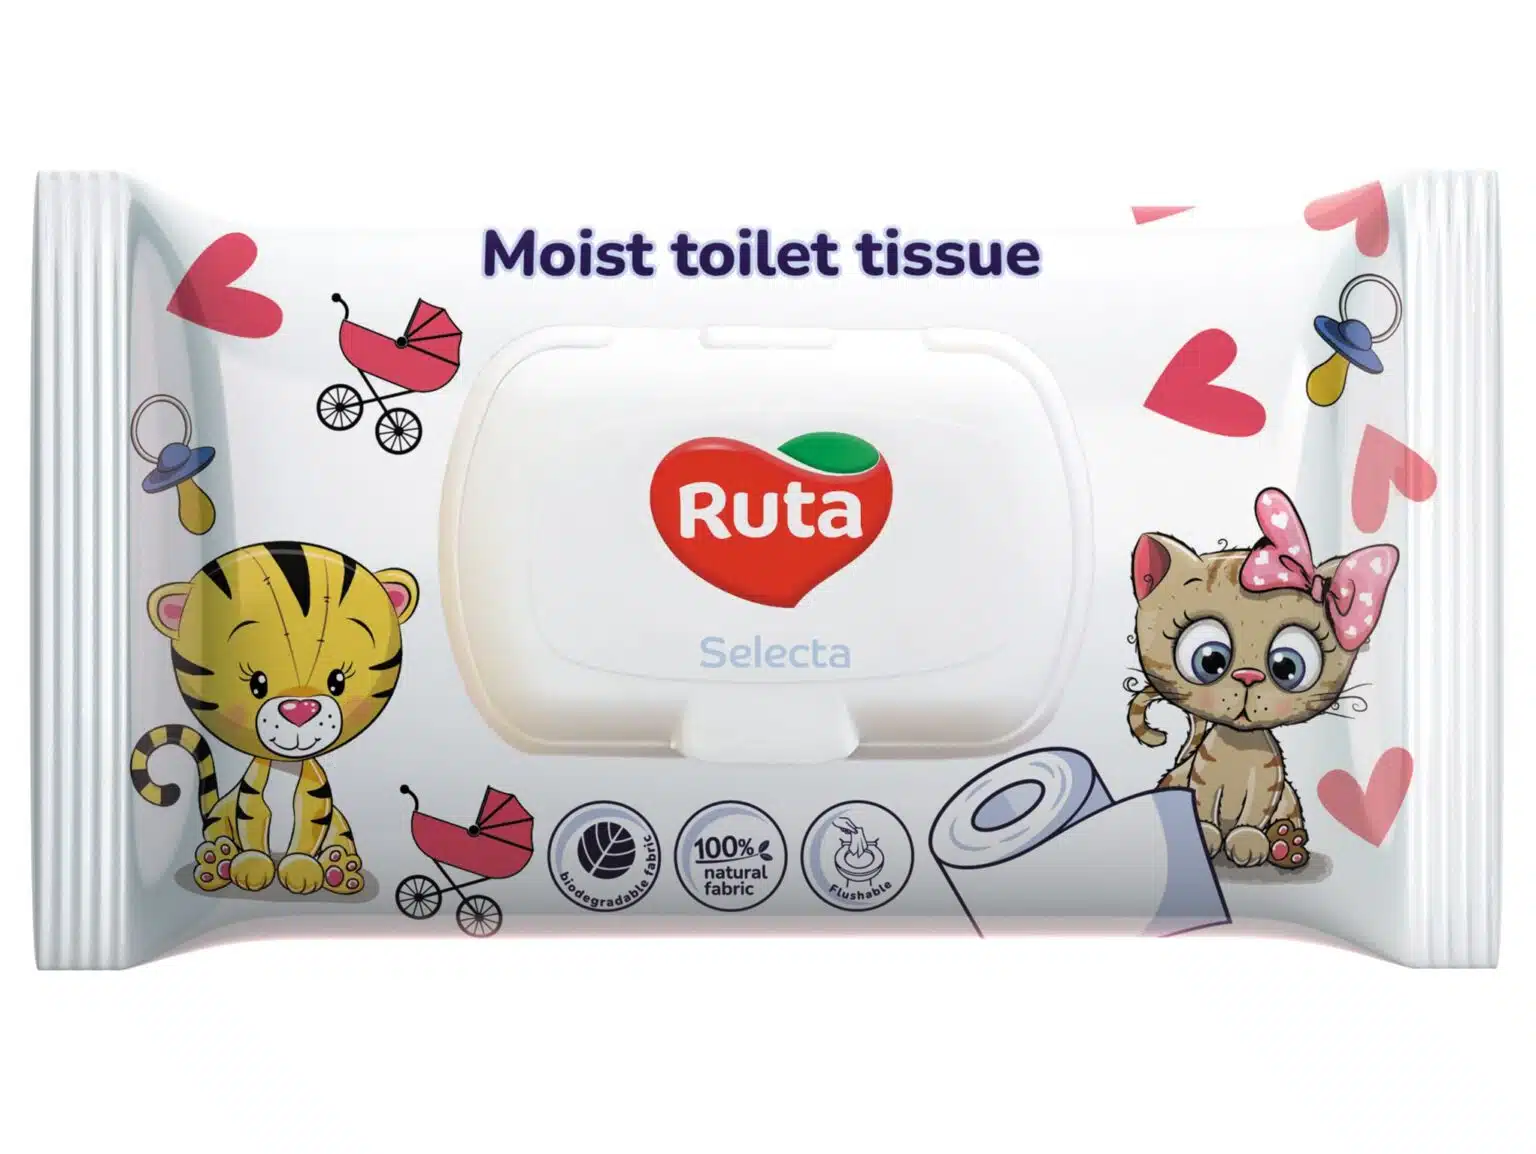 Mokry Papier Toaletowy Ruta Selecta - Świeżość na Wyciągnięcie Ręki! tp vlagka min